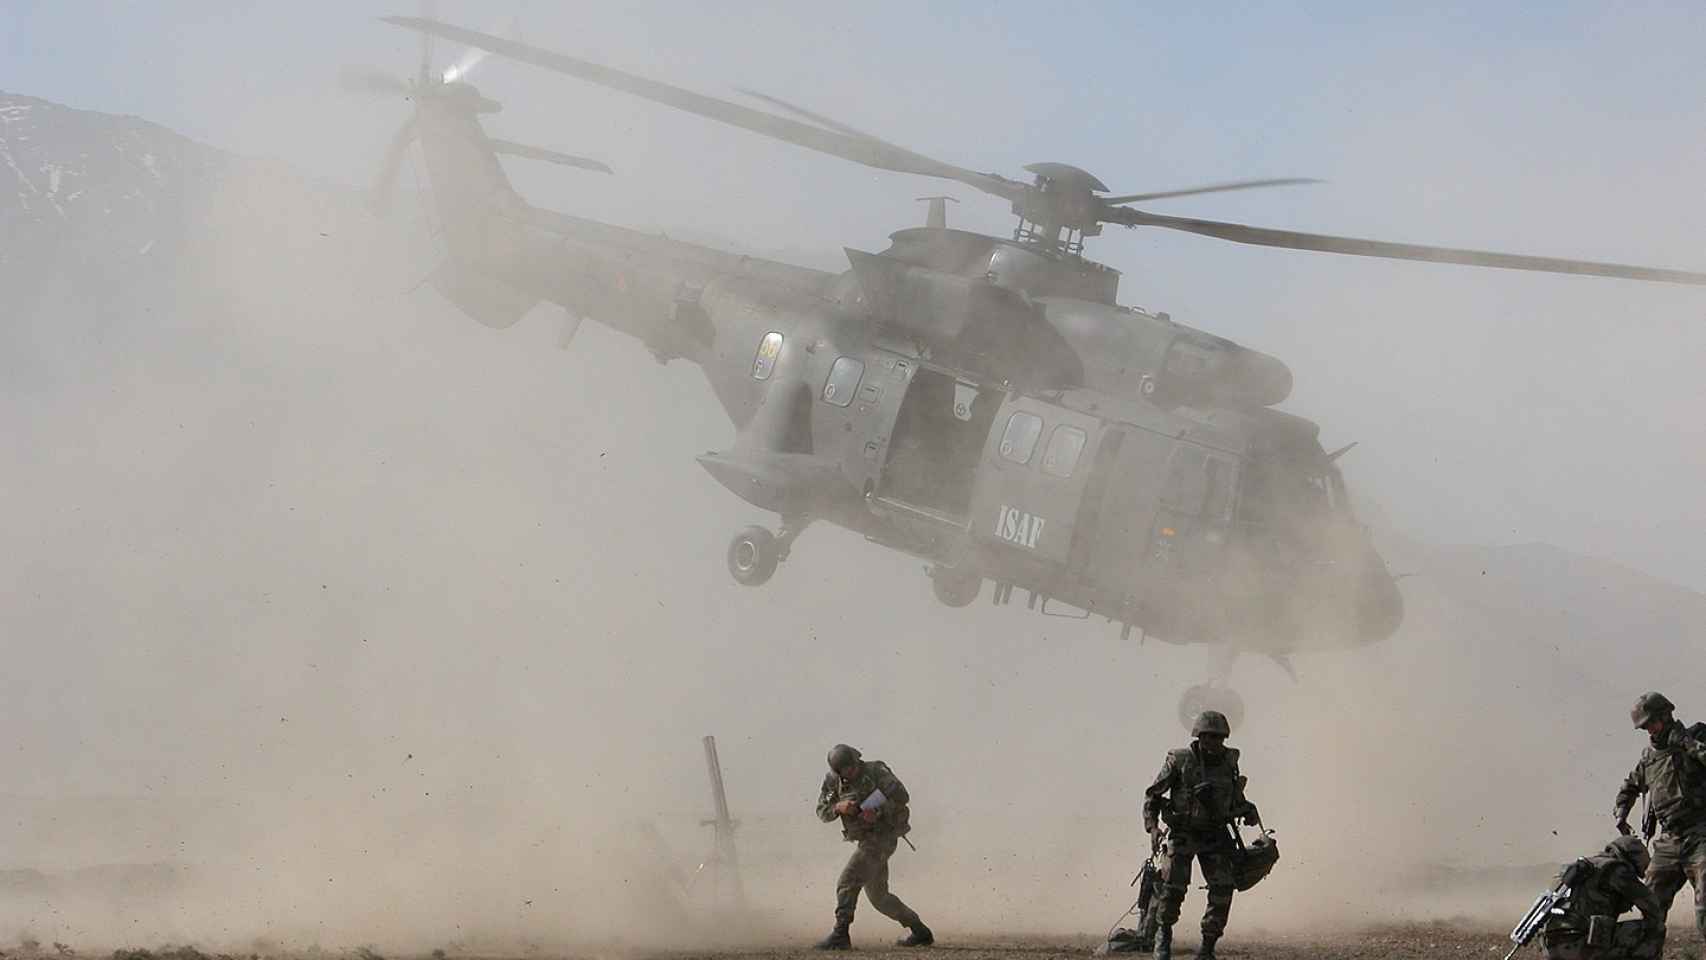 Helicóptero Cougar en Afghanistán